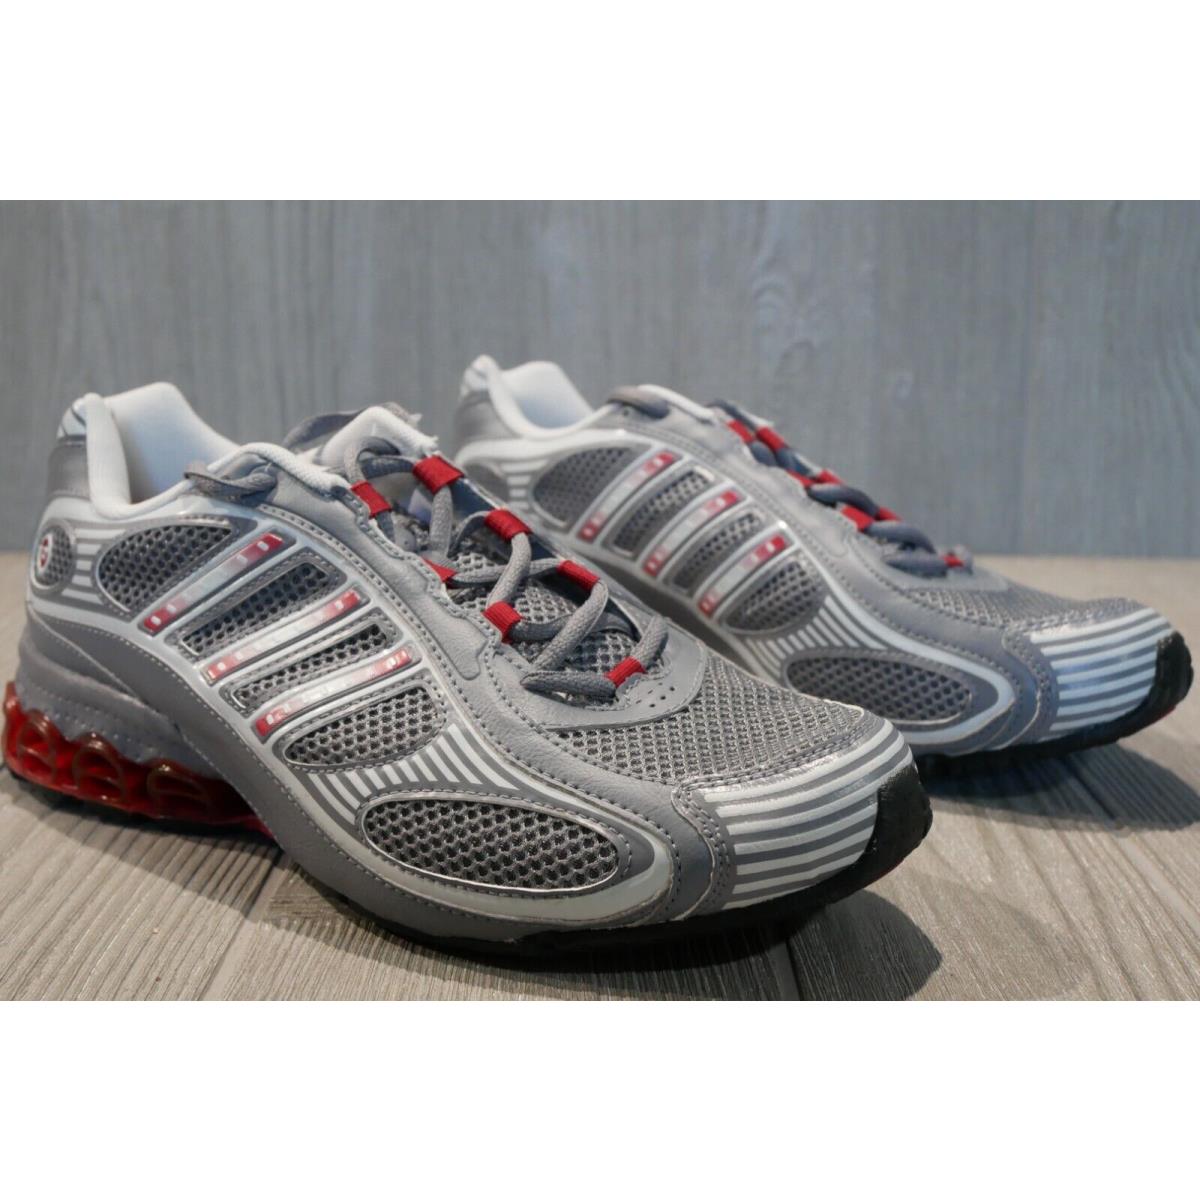 Adidas shoes Cub - grey 2